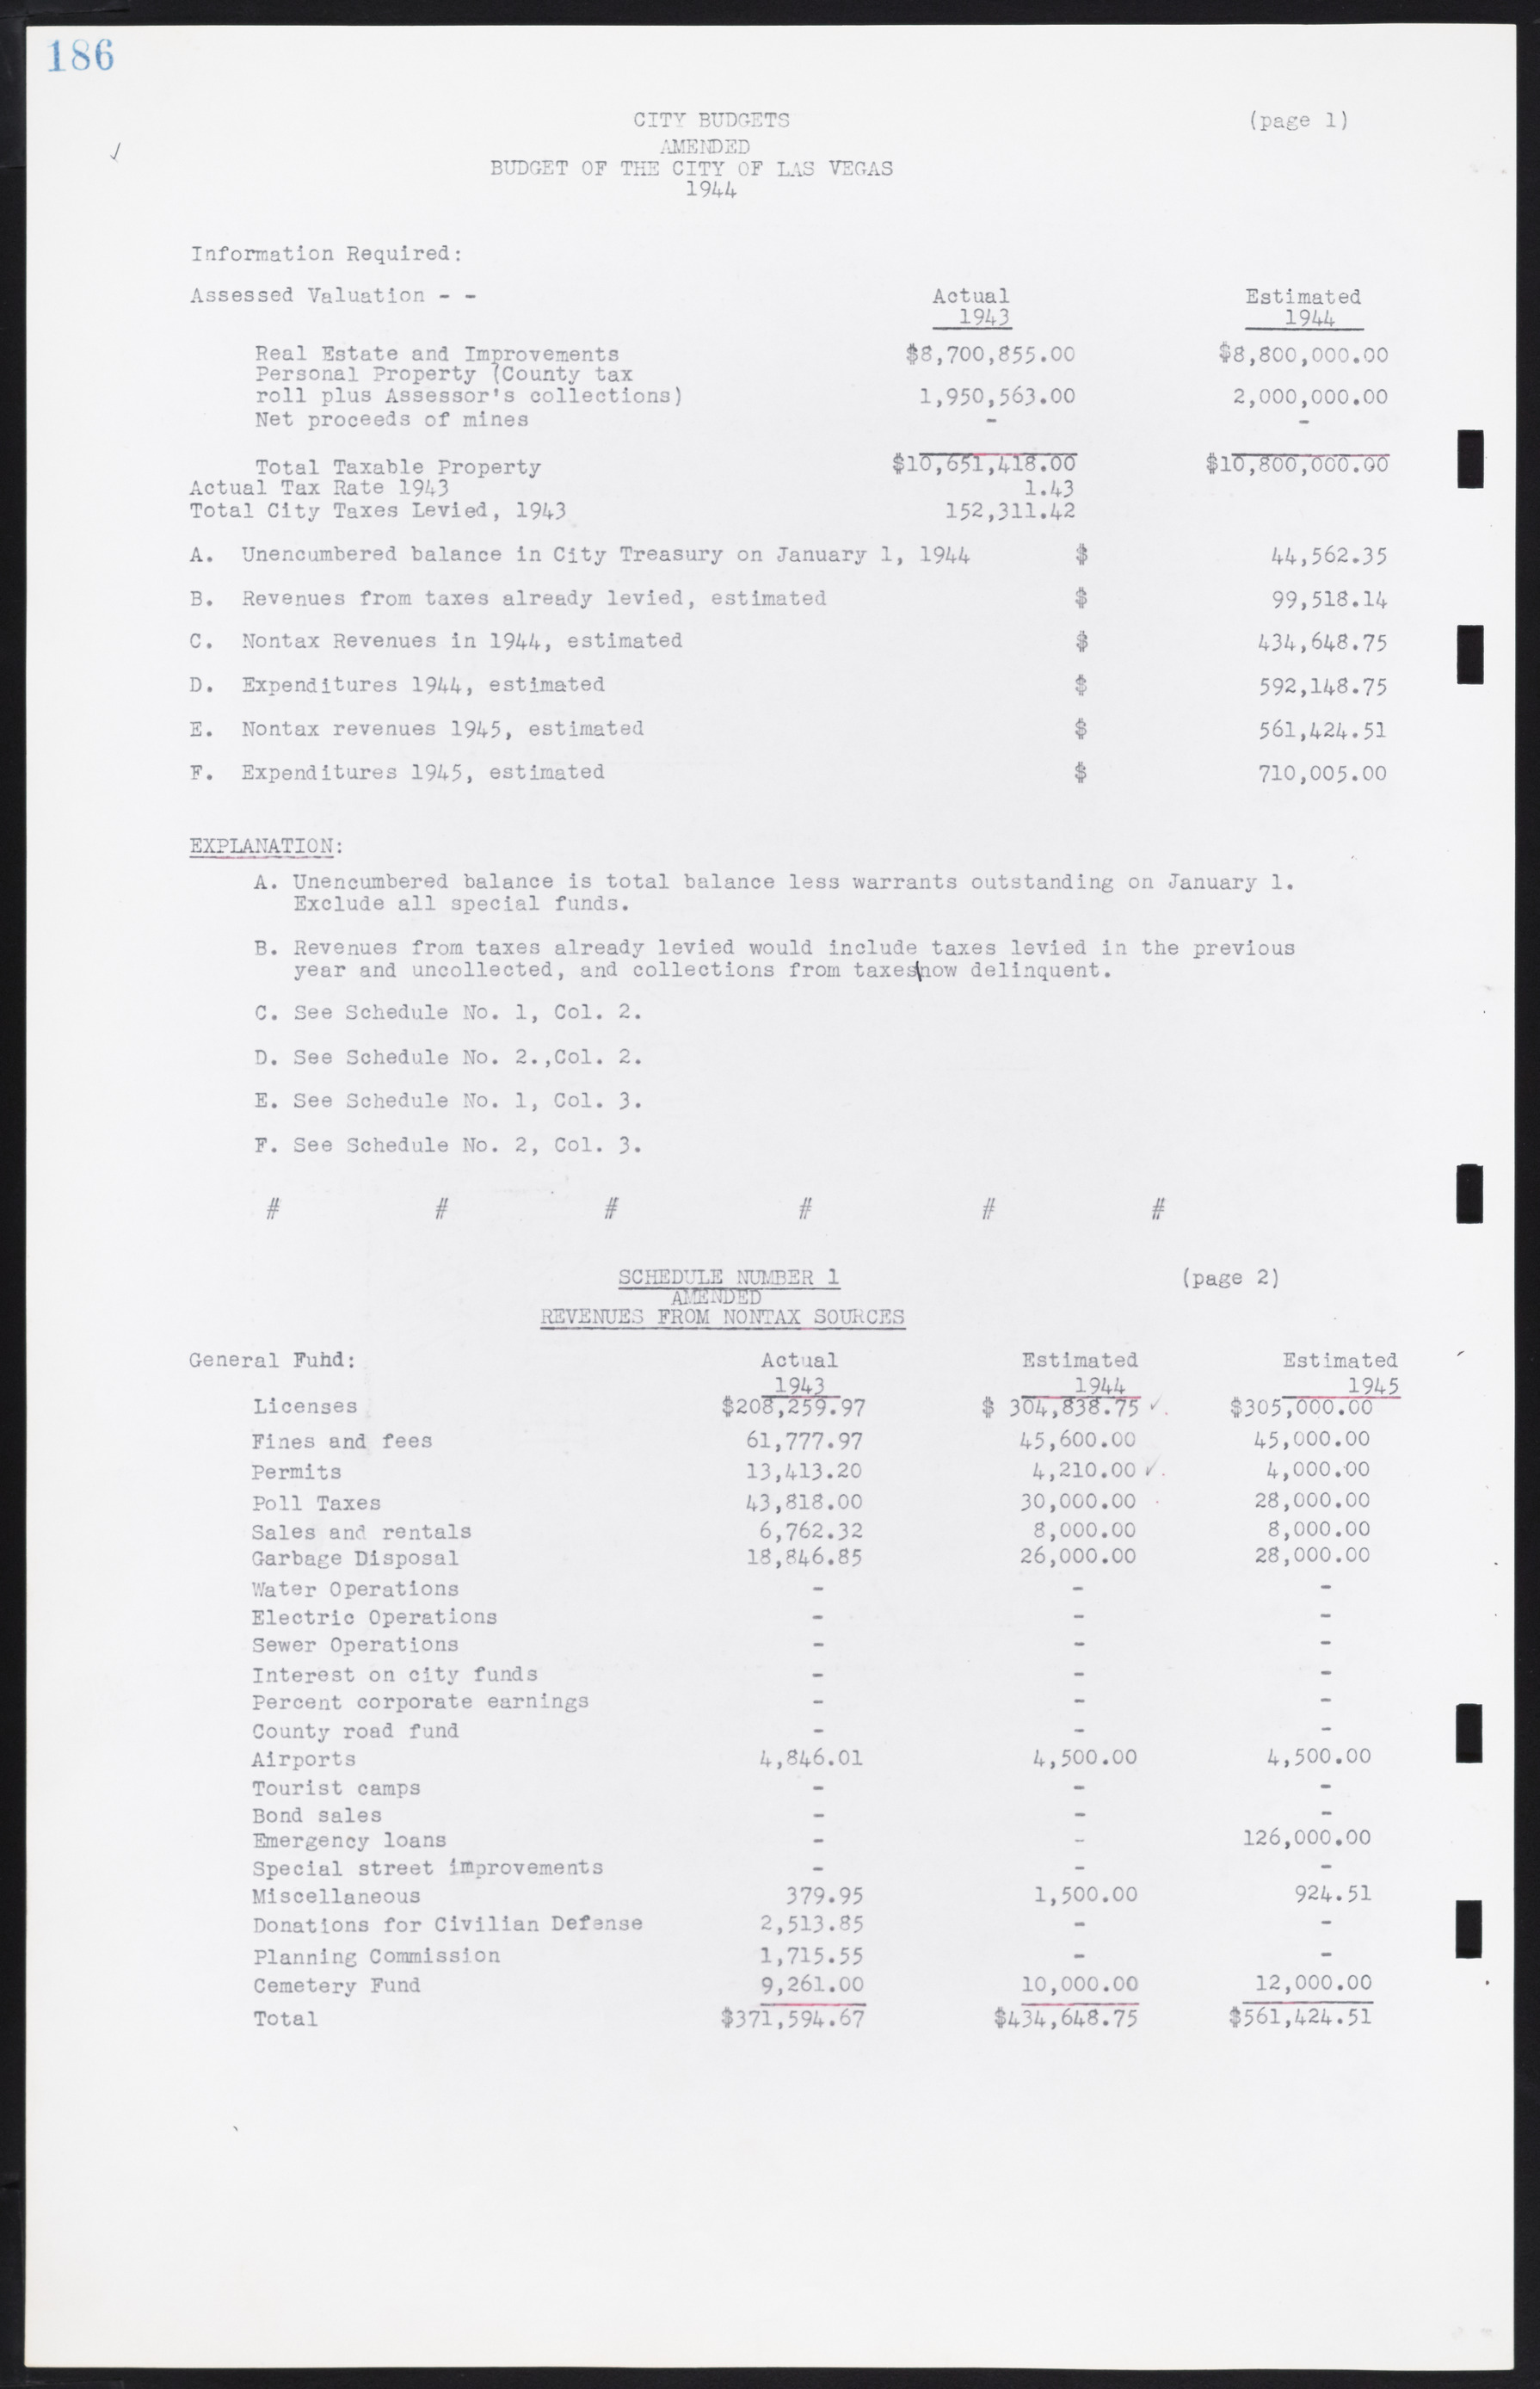 Las Vegas City Commission Minutes, August 11, 1942 to December 30, 1946, lvc000005-205